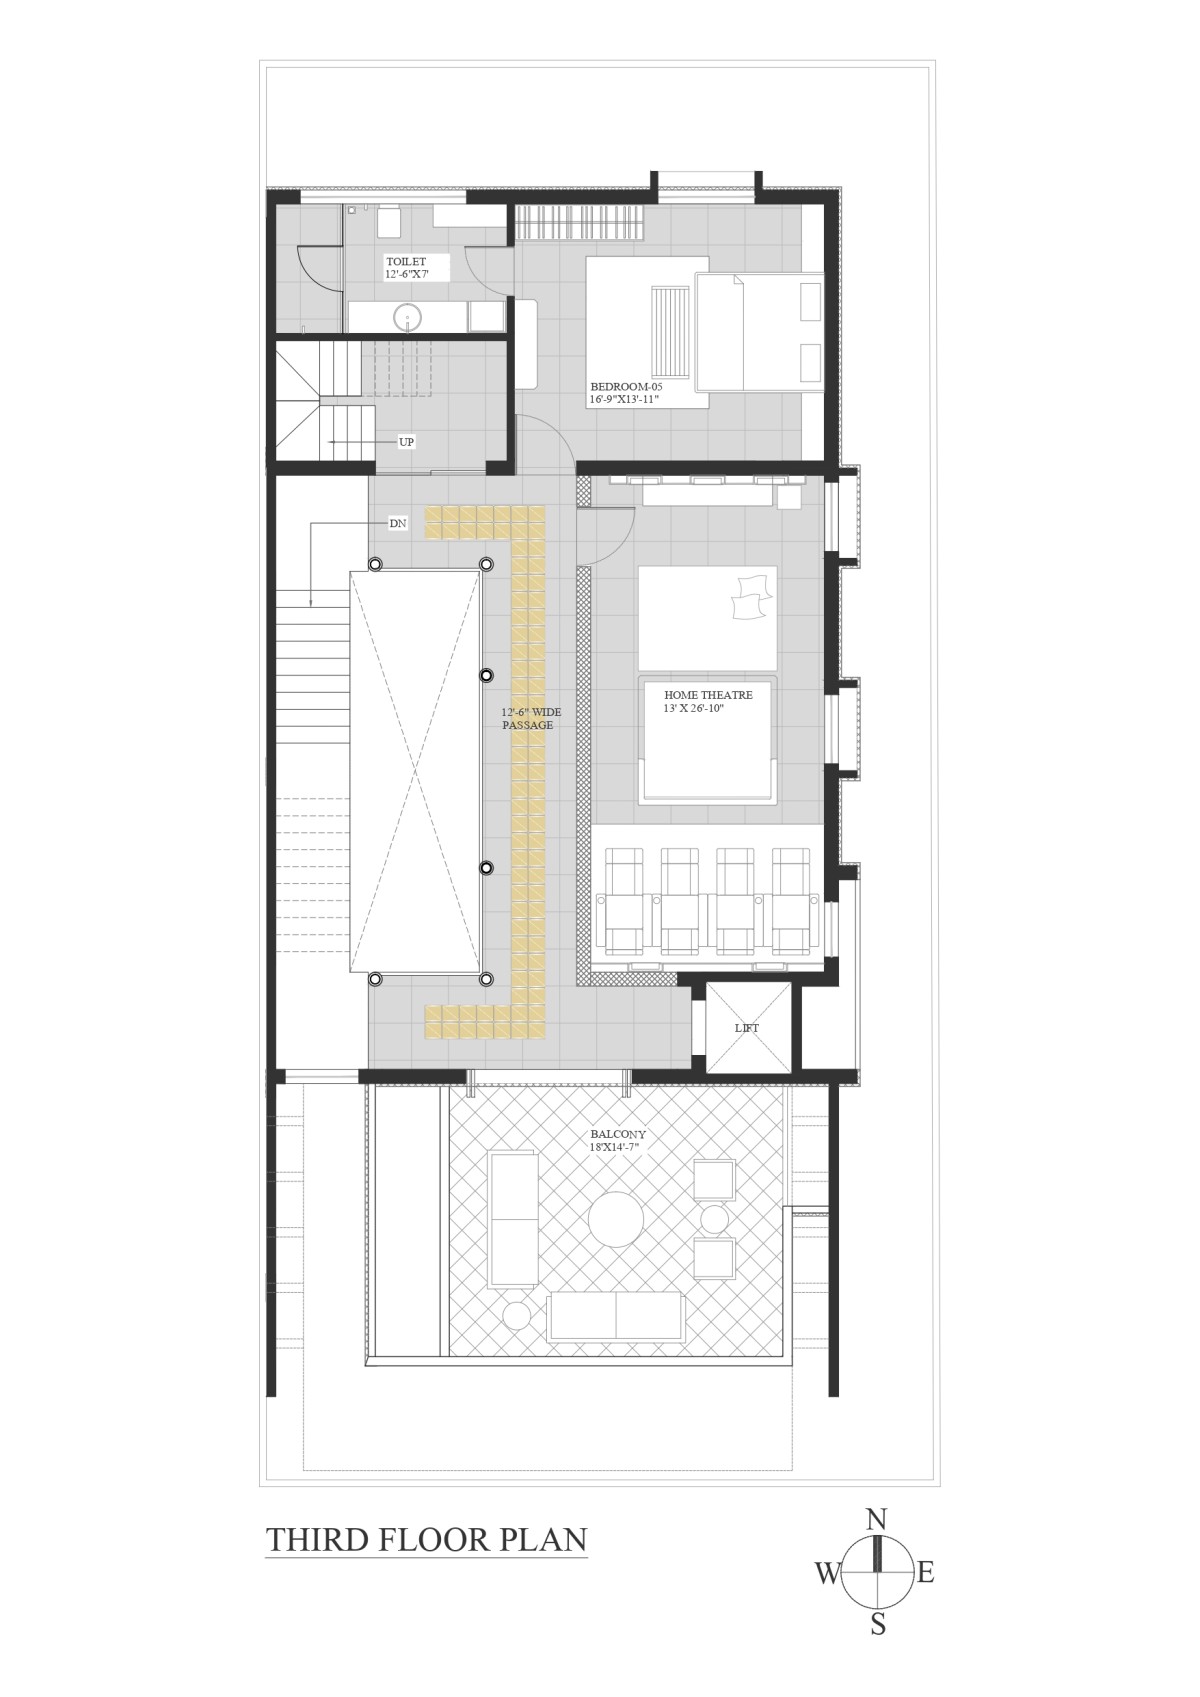 Third floor plan of An Indian Abode by K.N. Associates